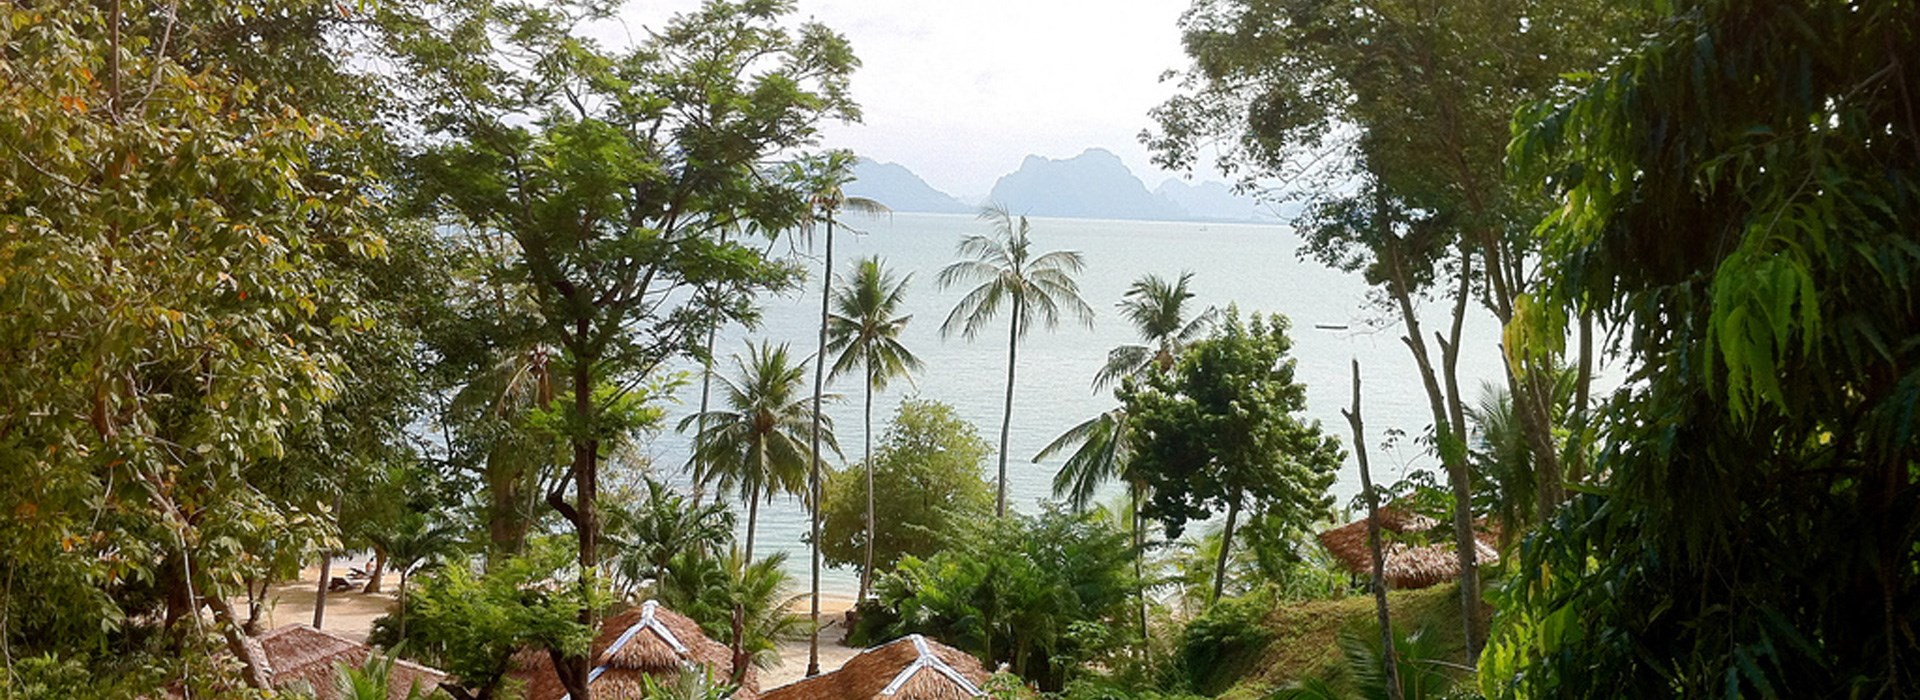 Visiter L'île de Koh Yao Noi - Thaïlande